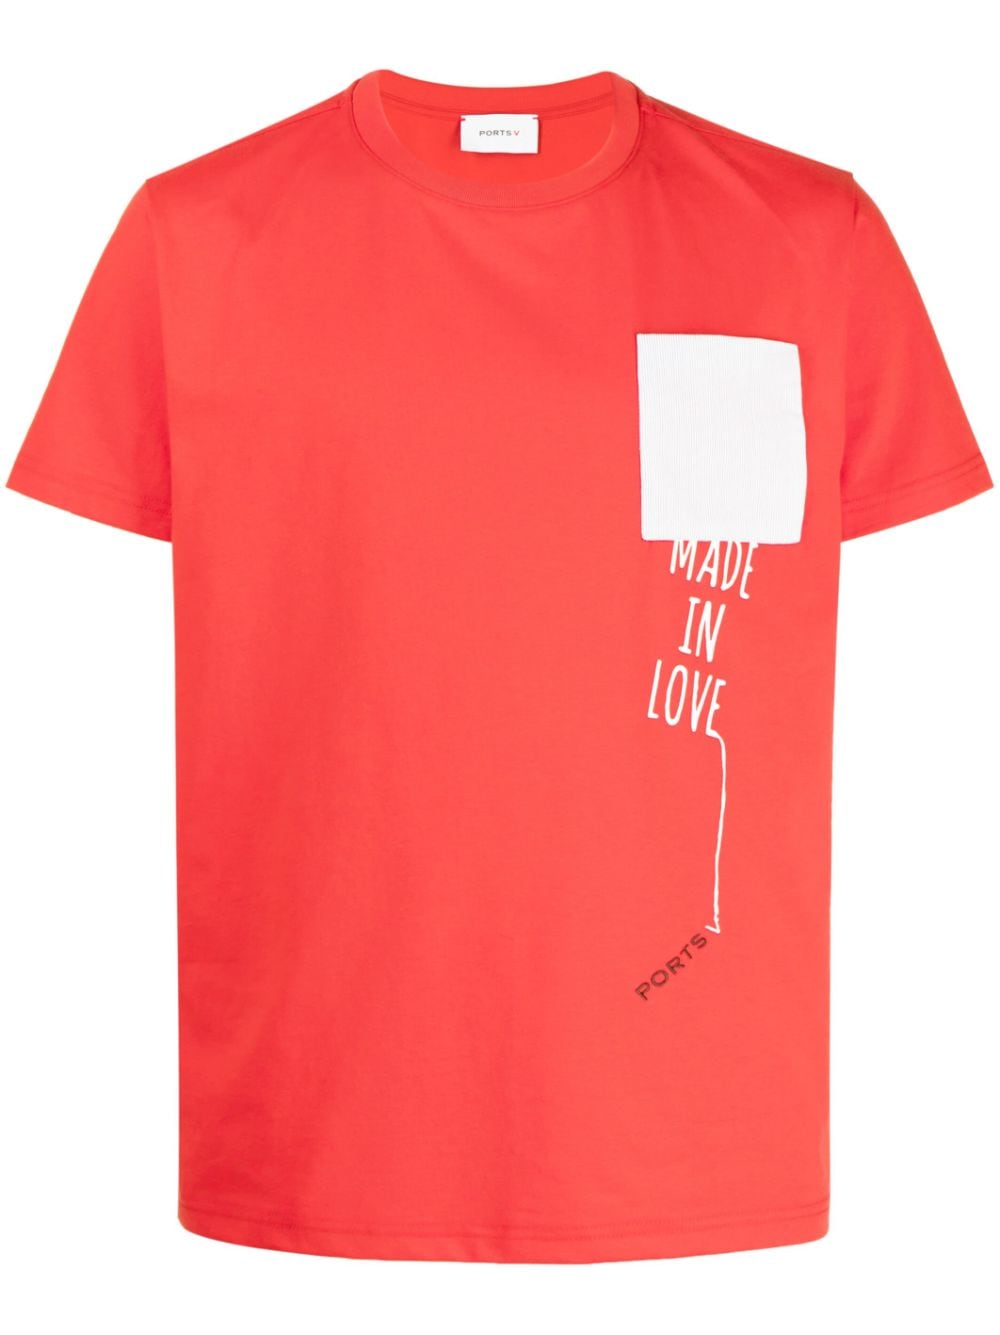 ports v t-shirt à logo brodé - rouge